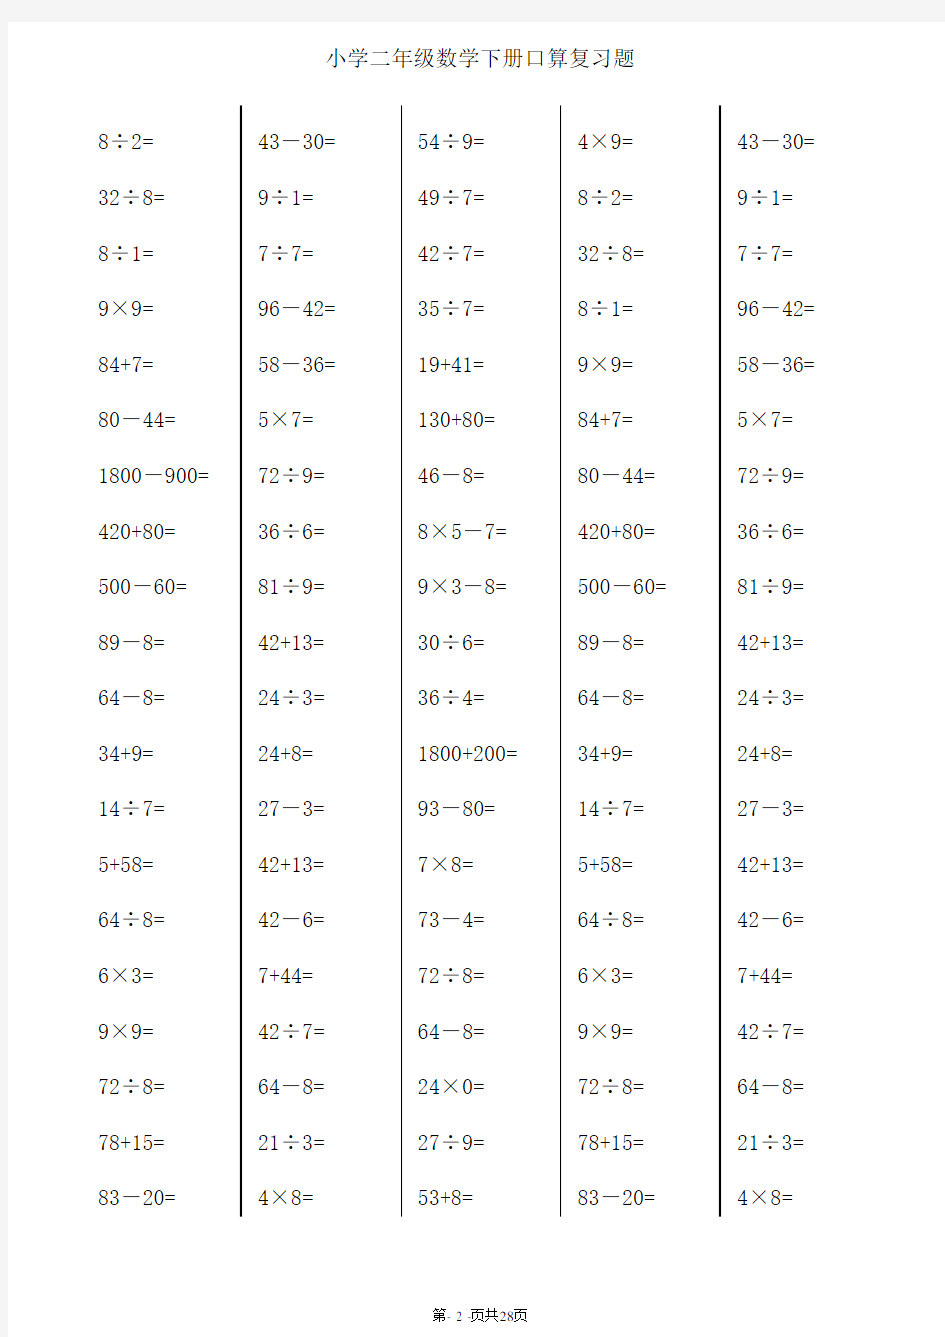 【推荐】二年级下册数学口算综合练习题 (每页100题)